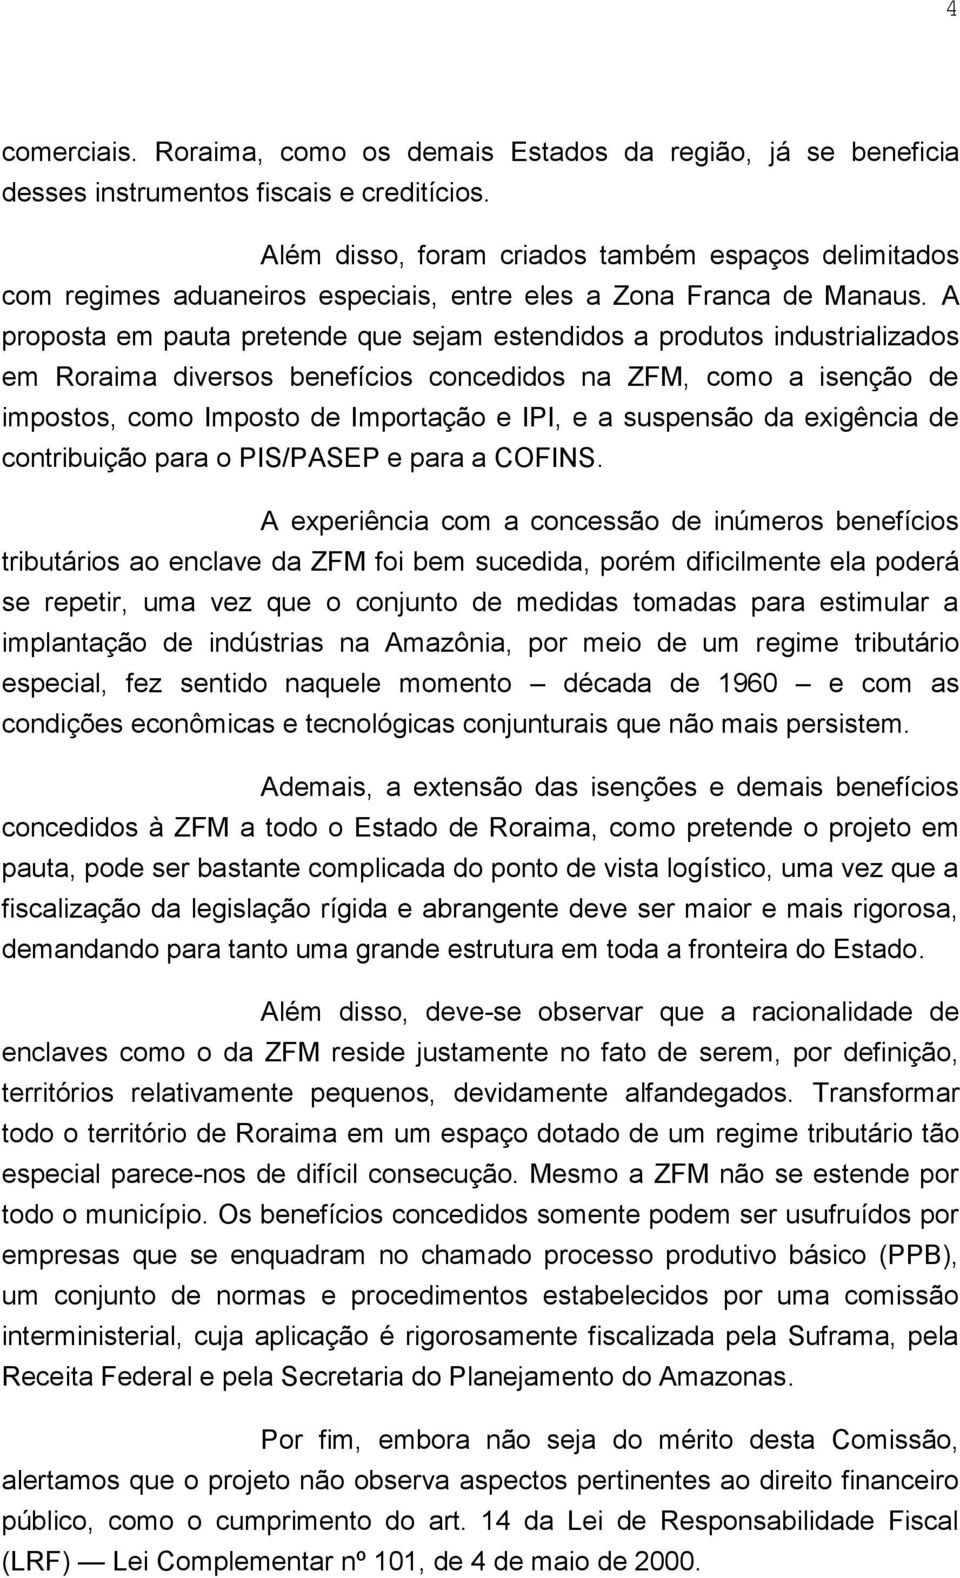 A proposta em pauta pretende que sejam estendidos a produtos industrializados em Roraima diversos benefícios concedidos na ZFM, como a isenção de impostos, como Imposto de Importação e IPI, e a